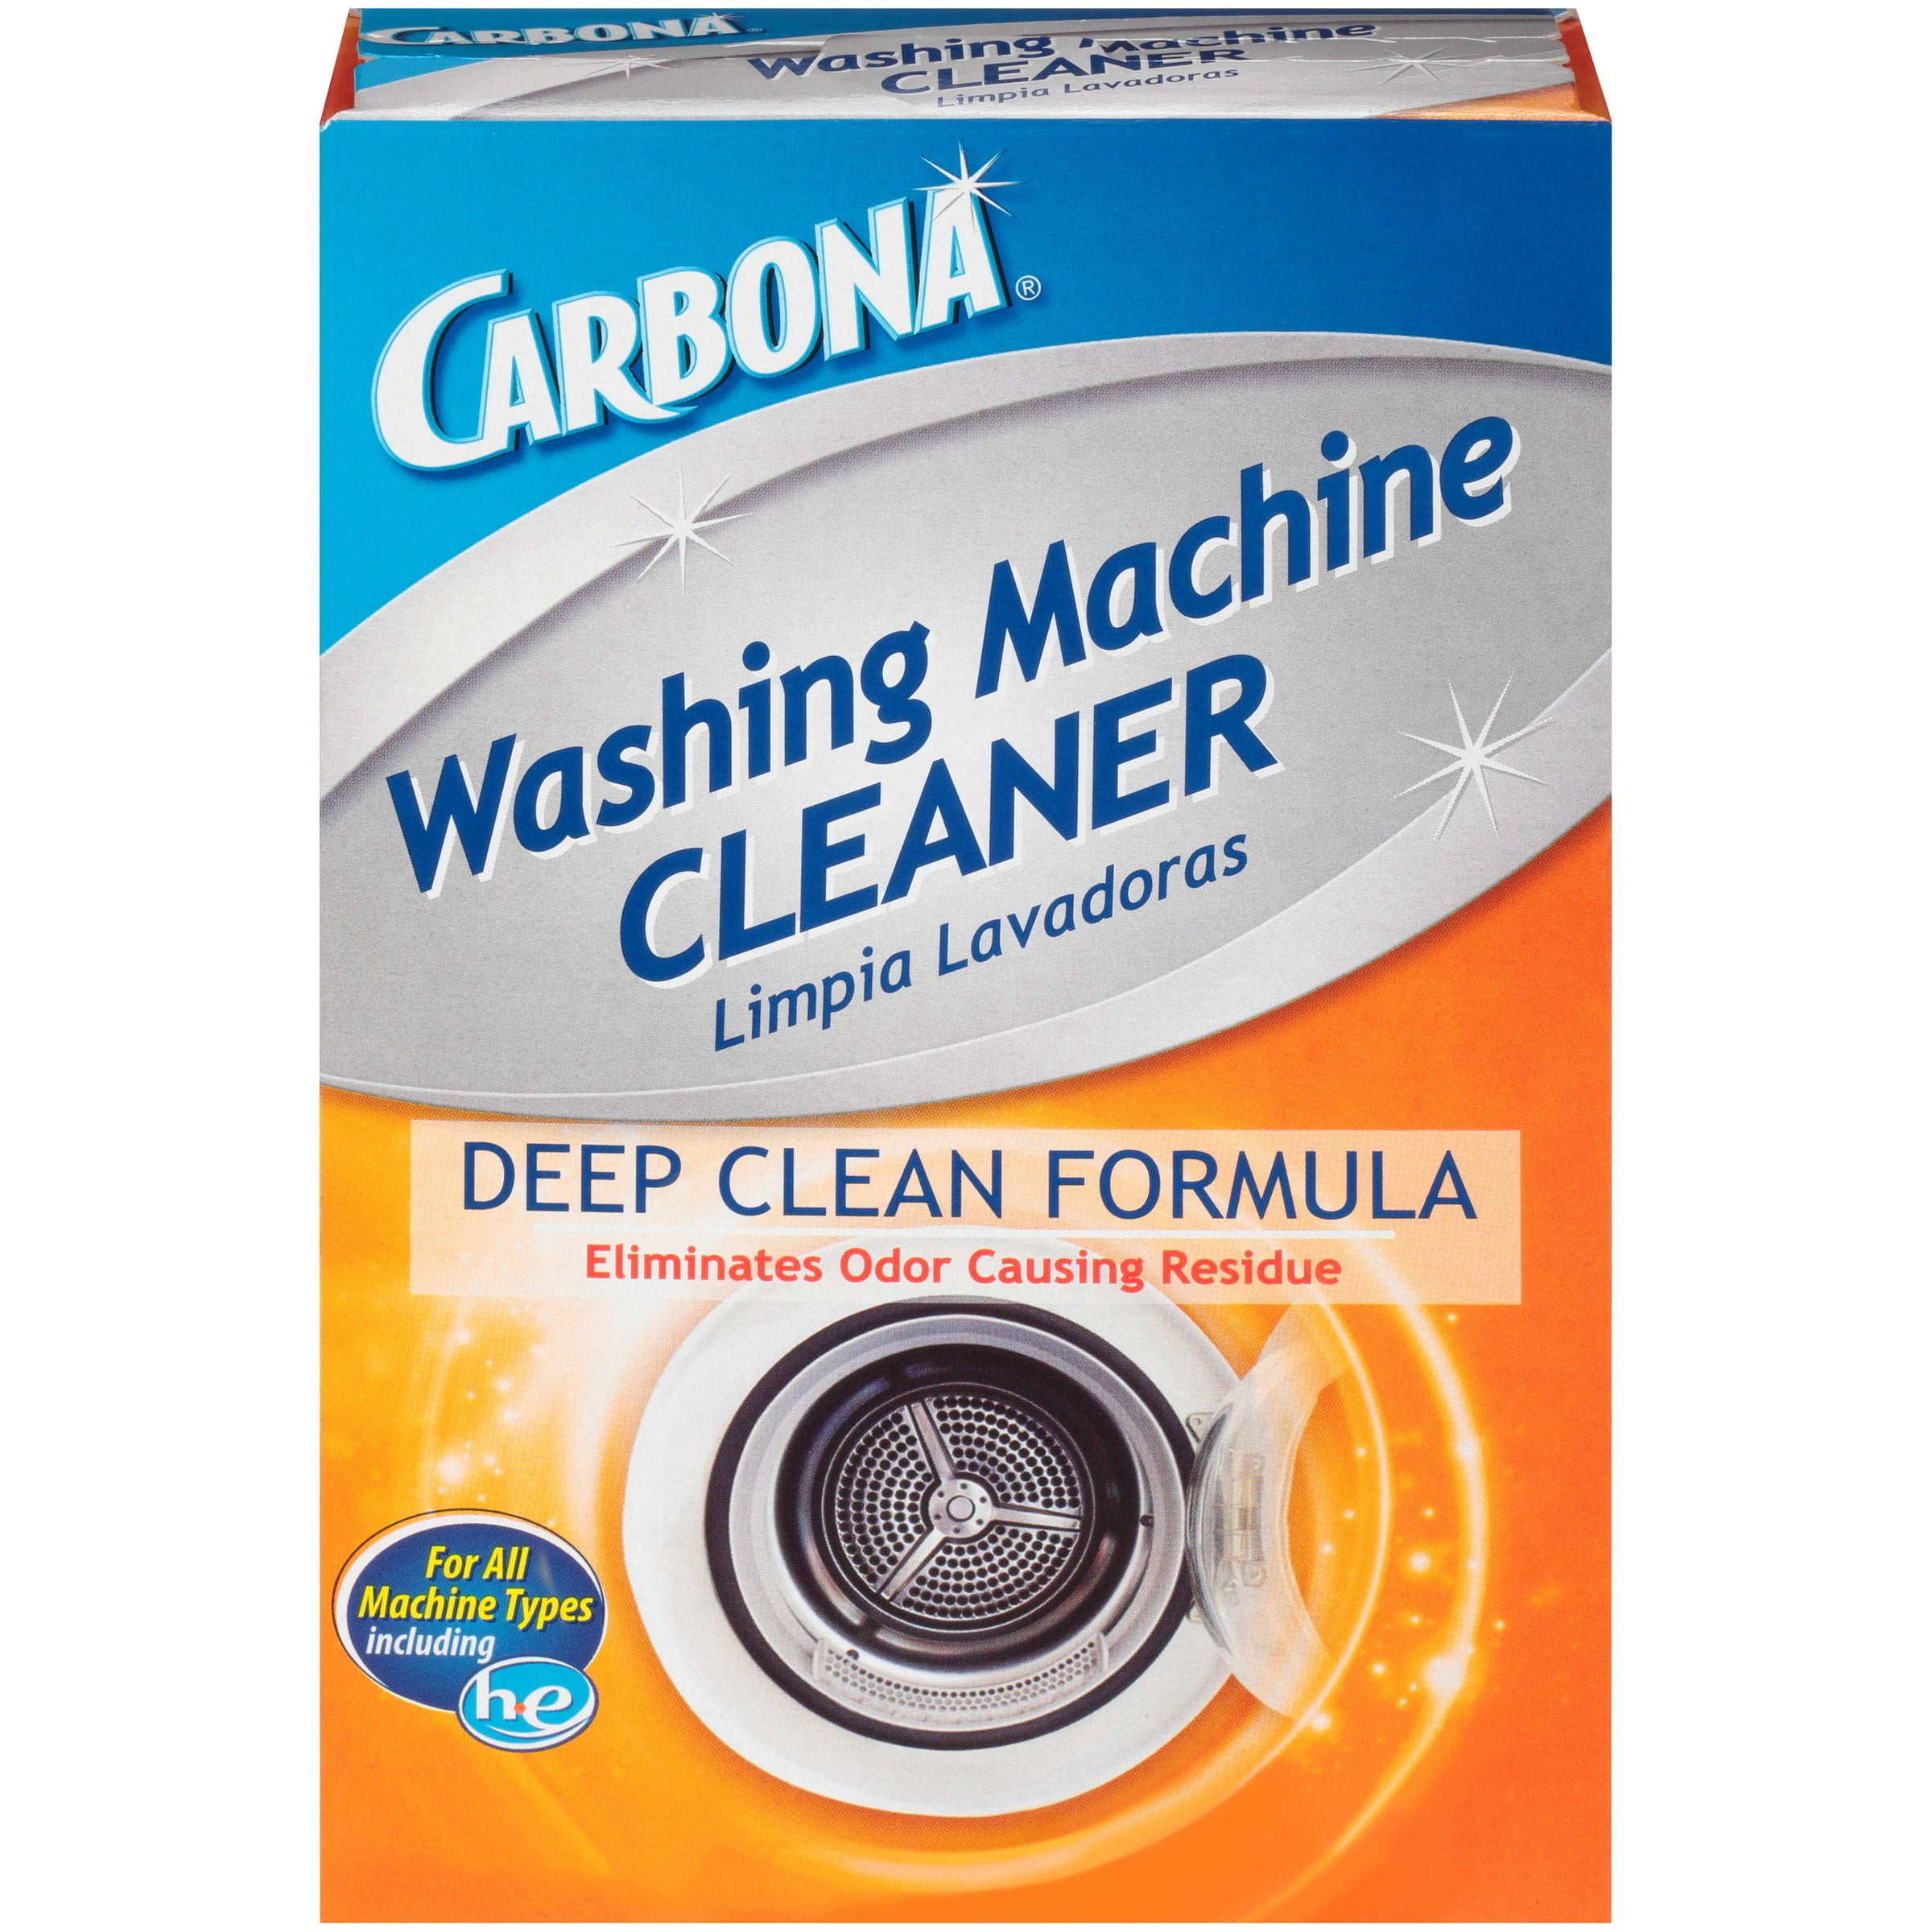 washing machine cleaning powder name